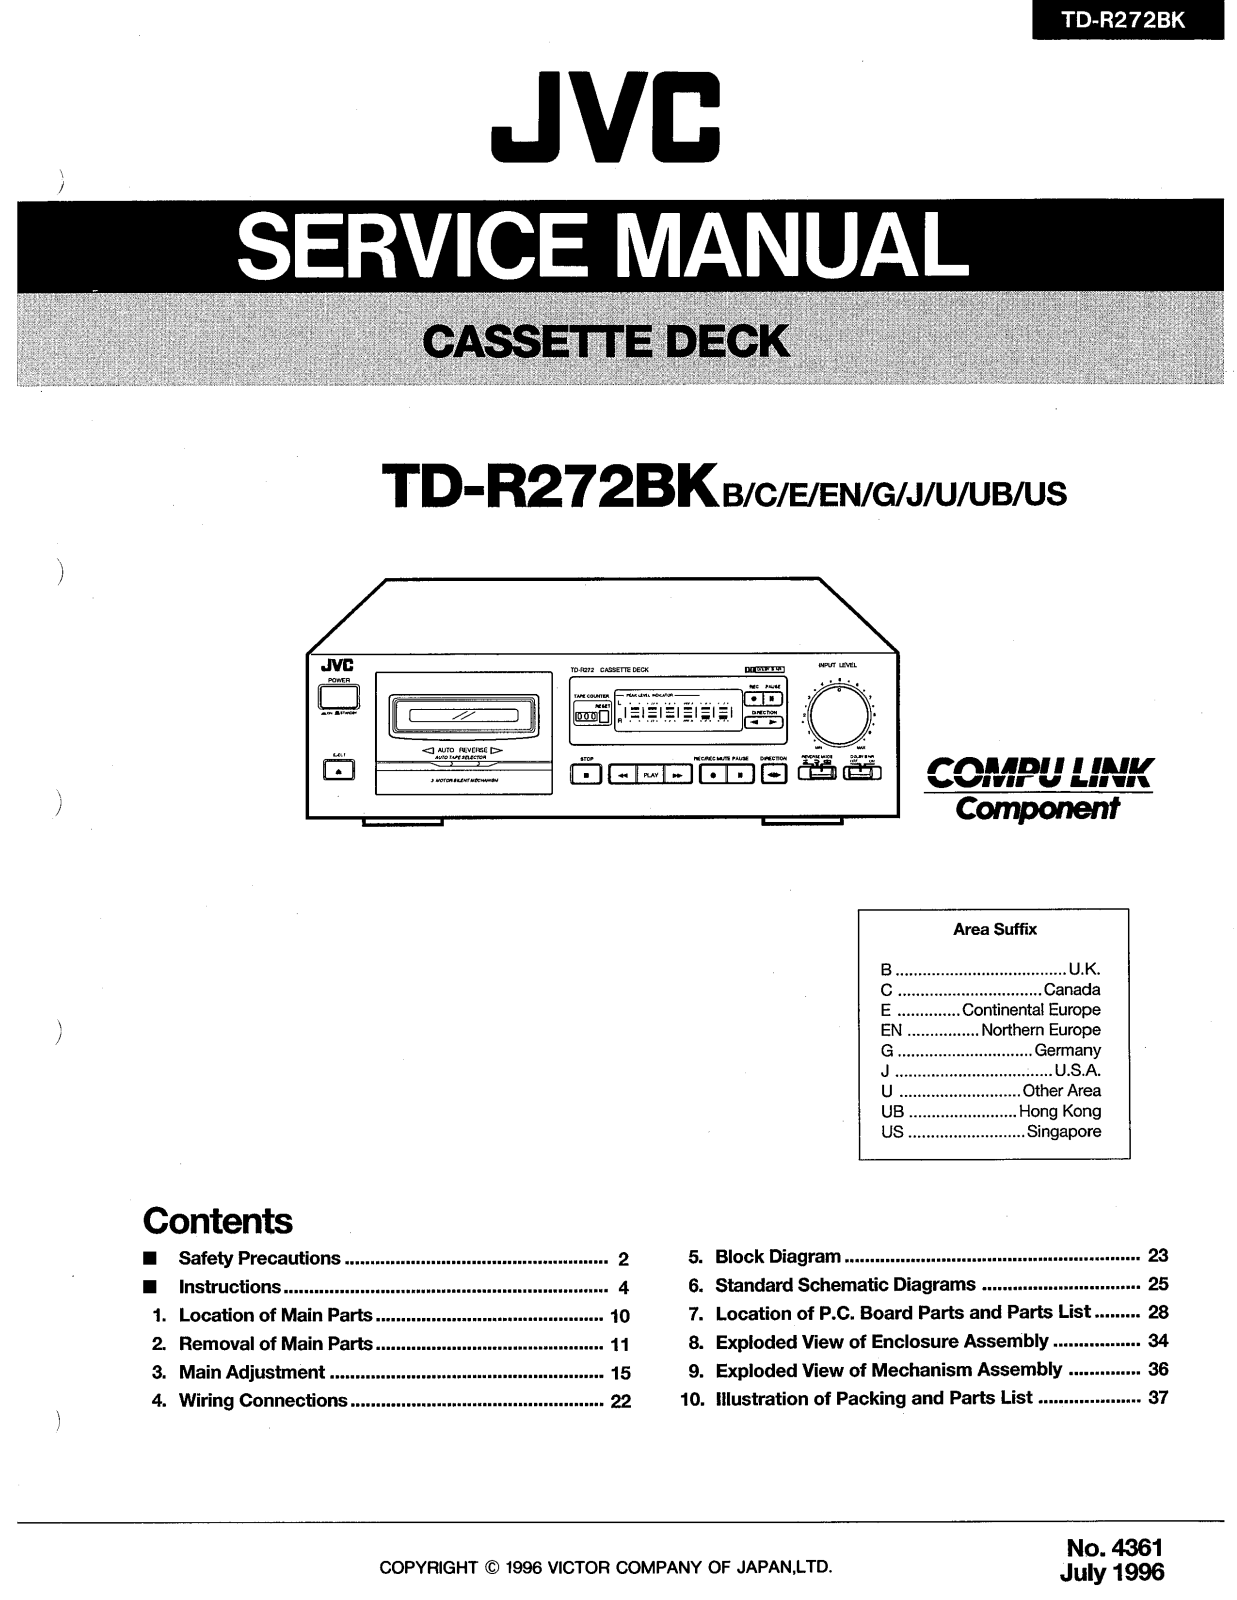 Jvc TD-R272-BK Service Manual